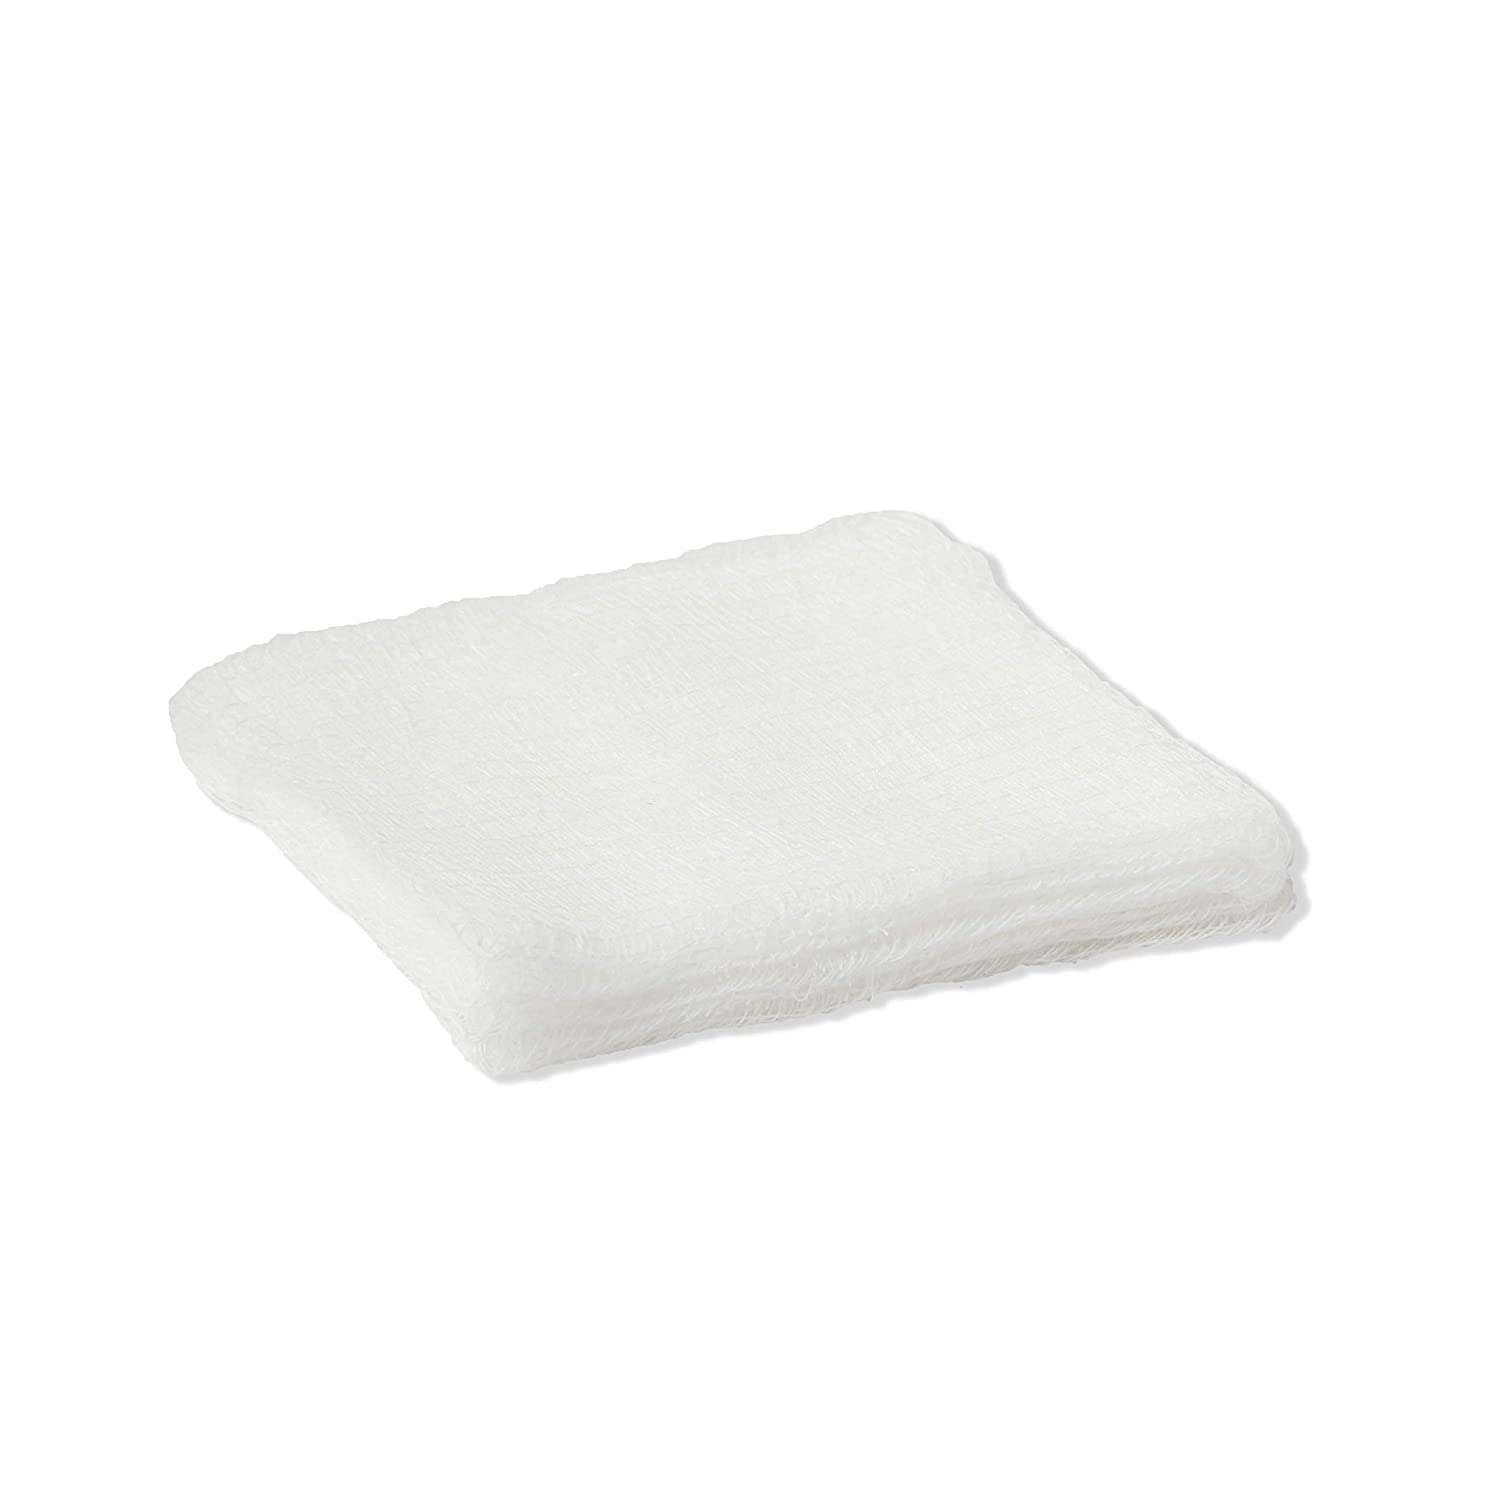 Almohadilla de gasa de algodón estéril absorbente desechable médica